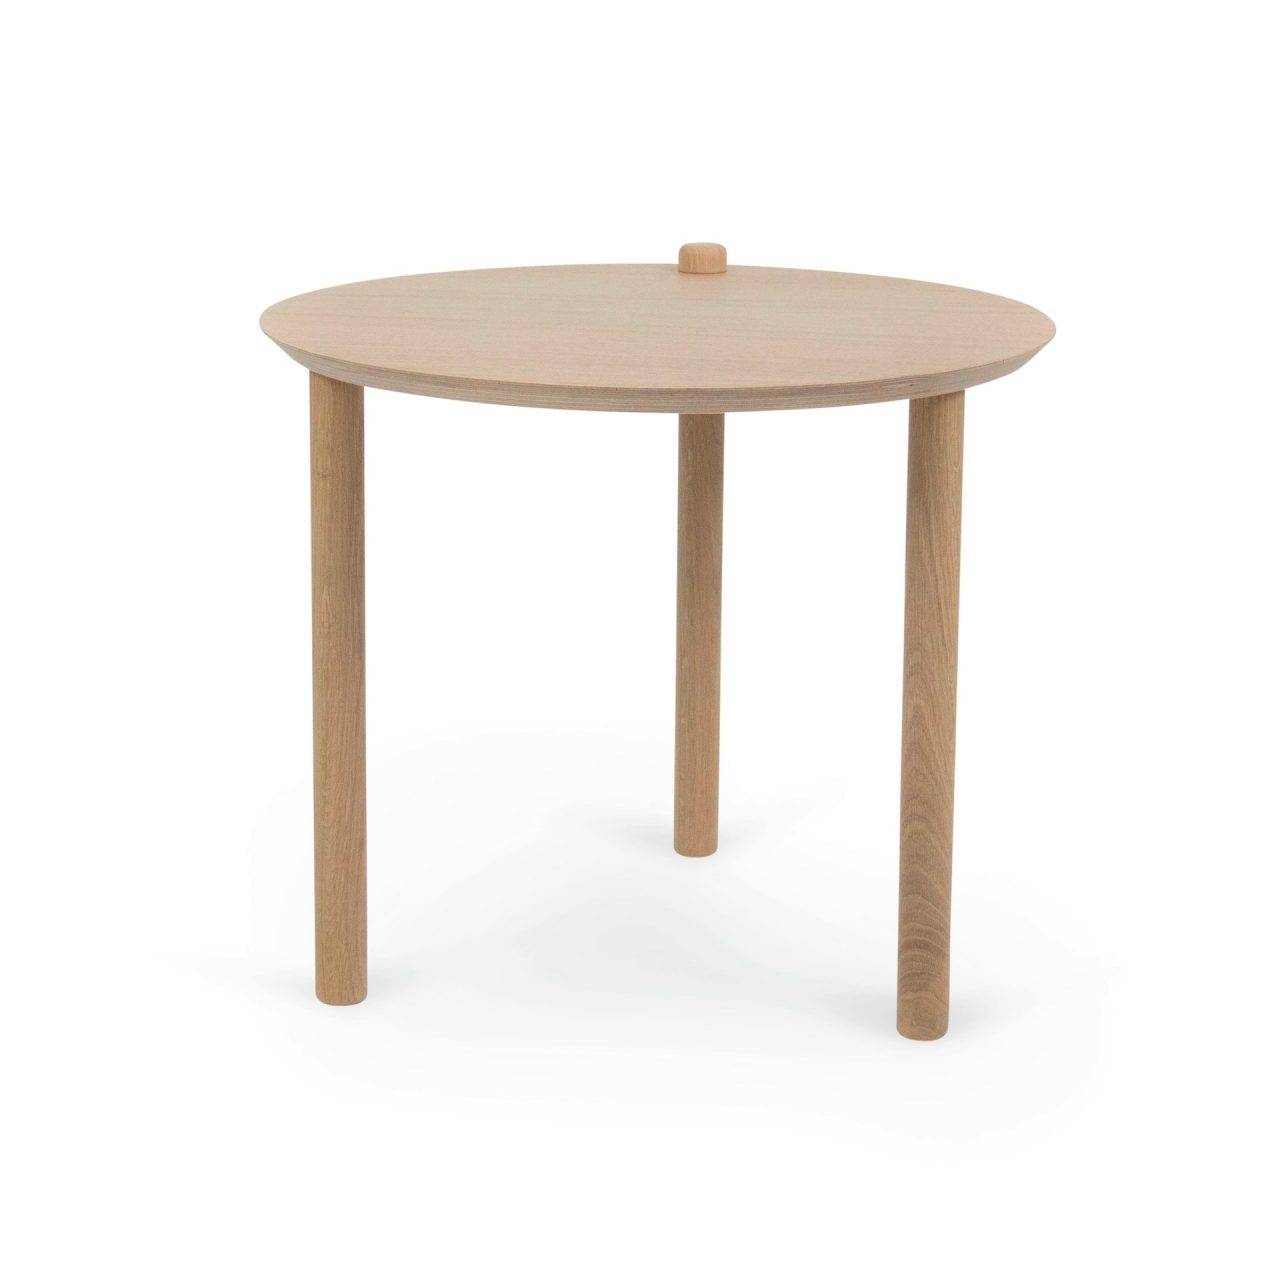 Table - table basse - table de chevet - table d'appoint. Fabrication française.